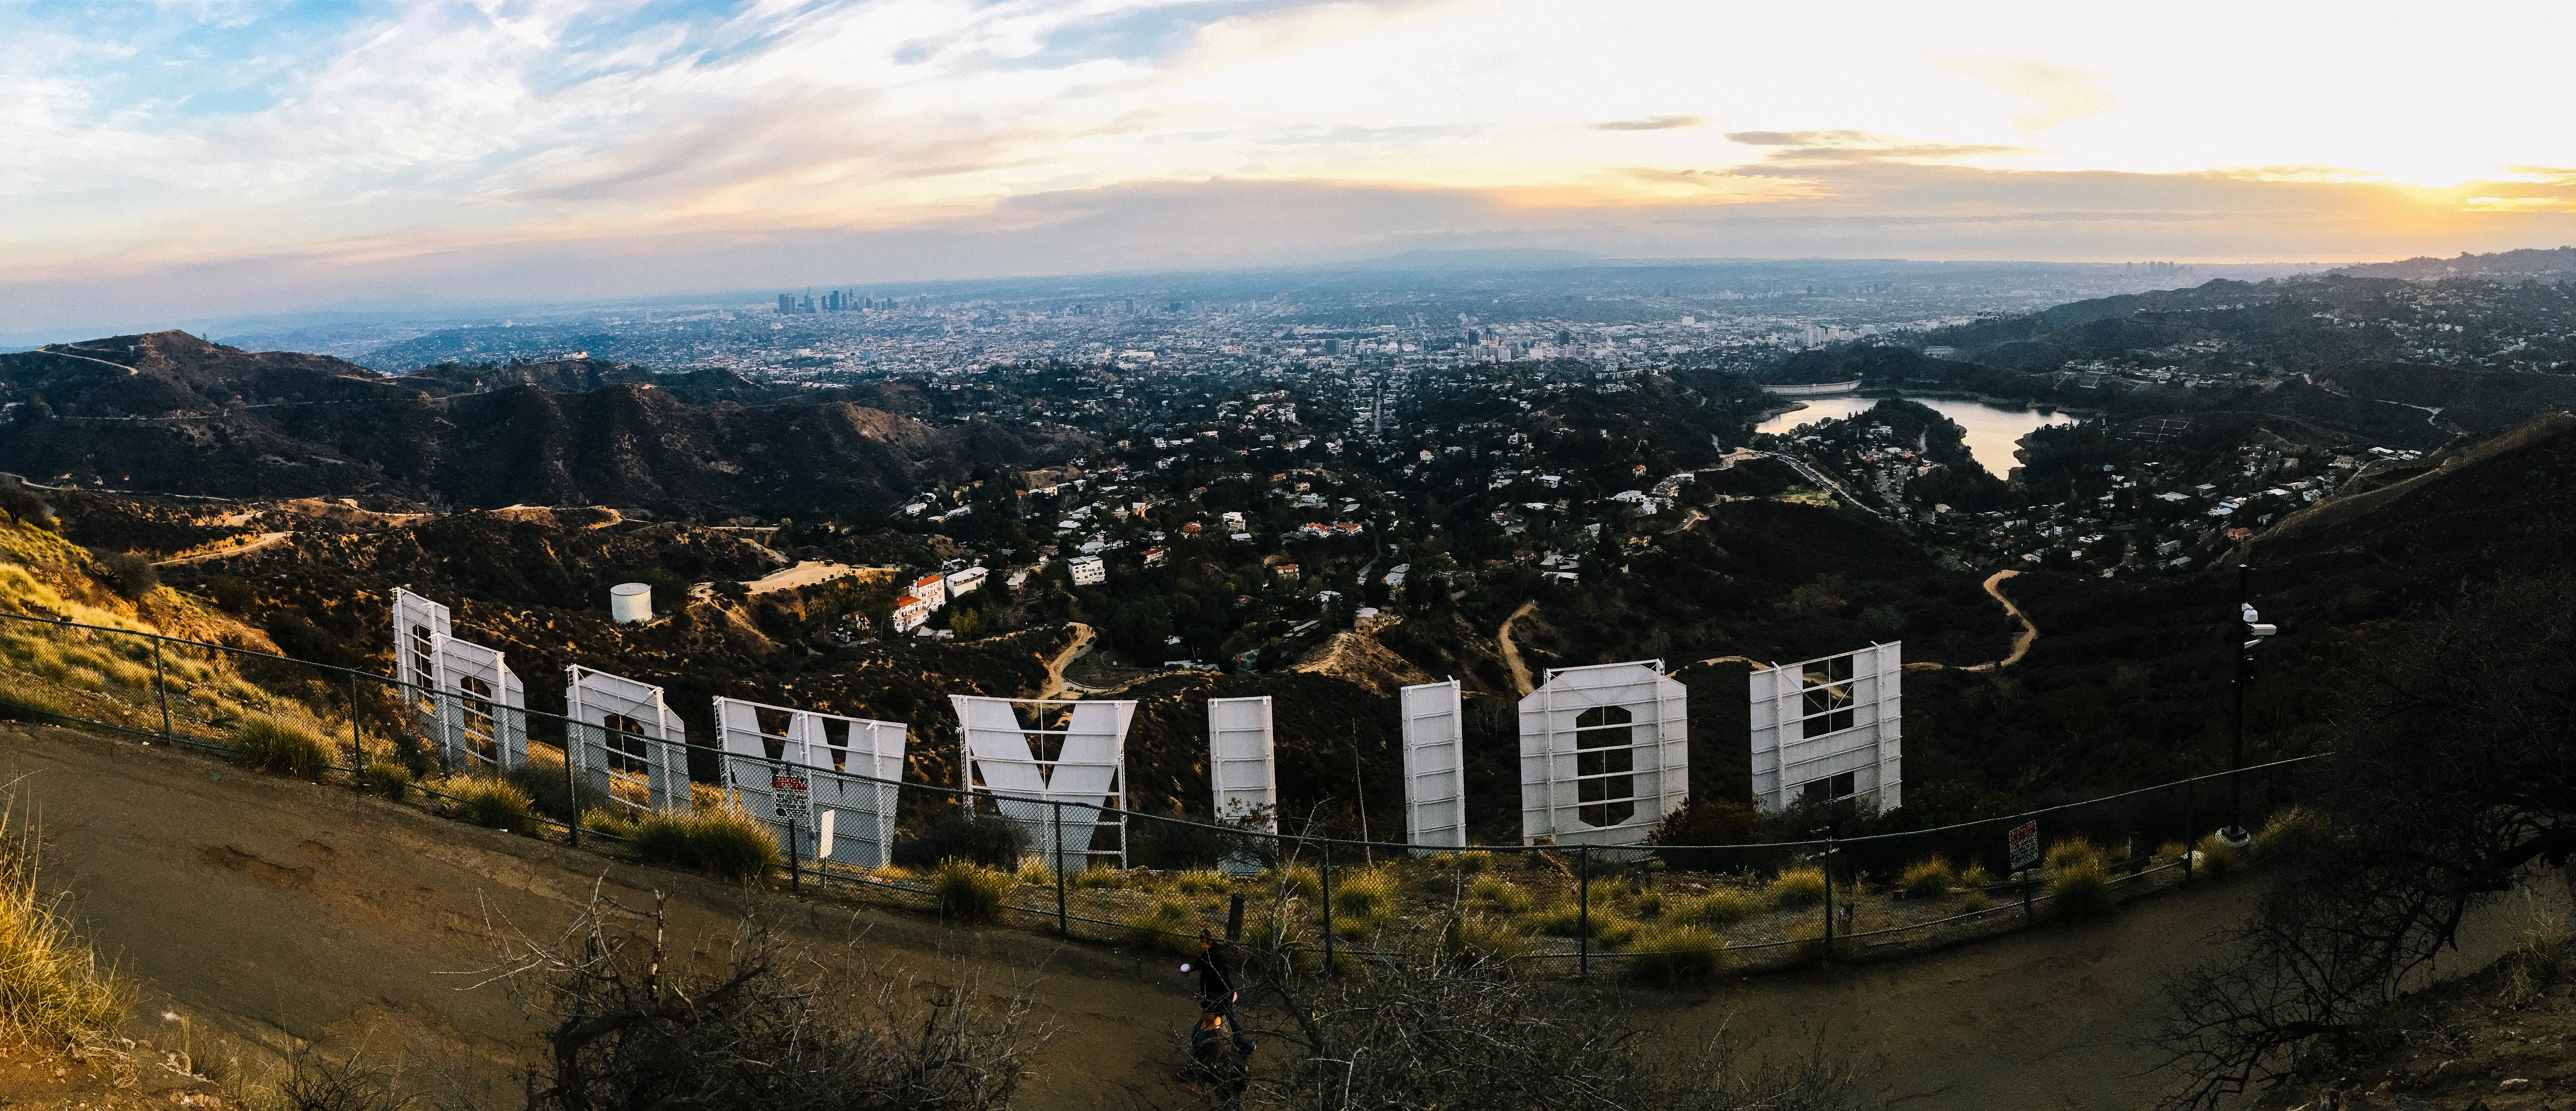 好莱坞字母边上的大型城市景观